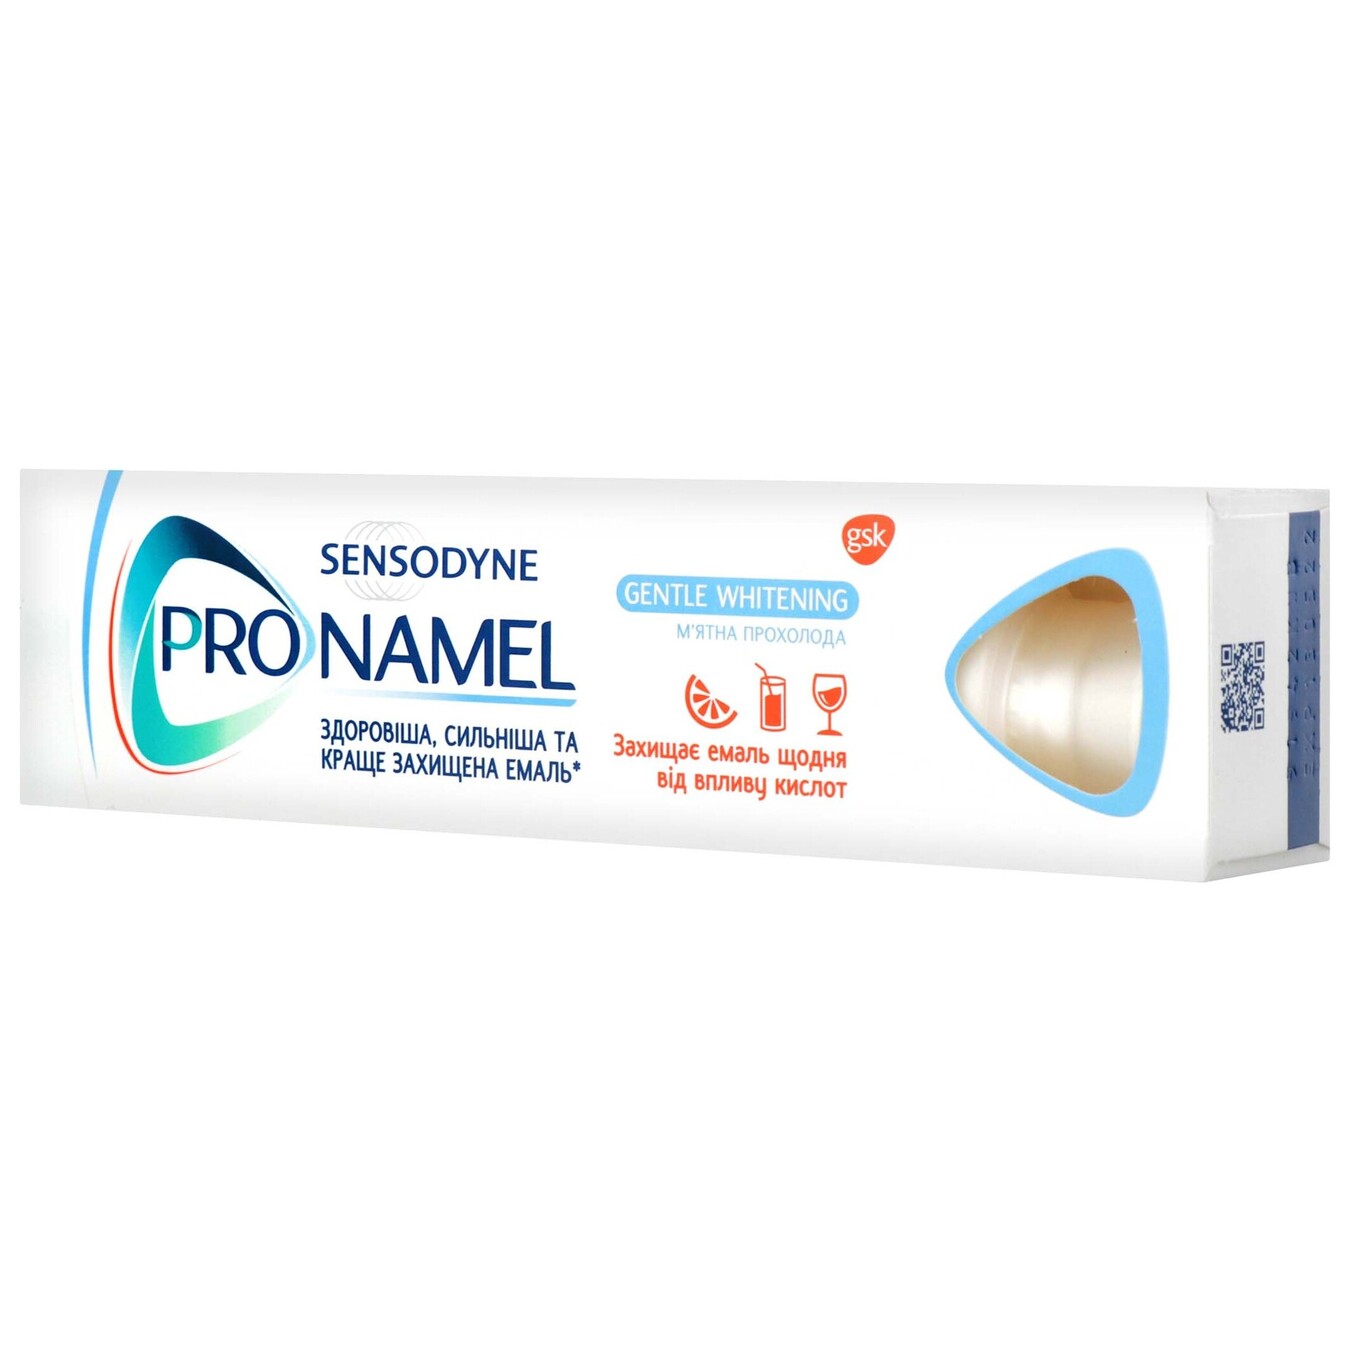 Toothpaste Sensodyne Pronamel whitening 75 ml 2